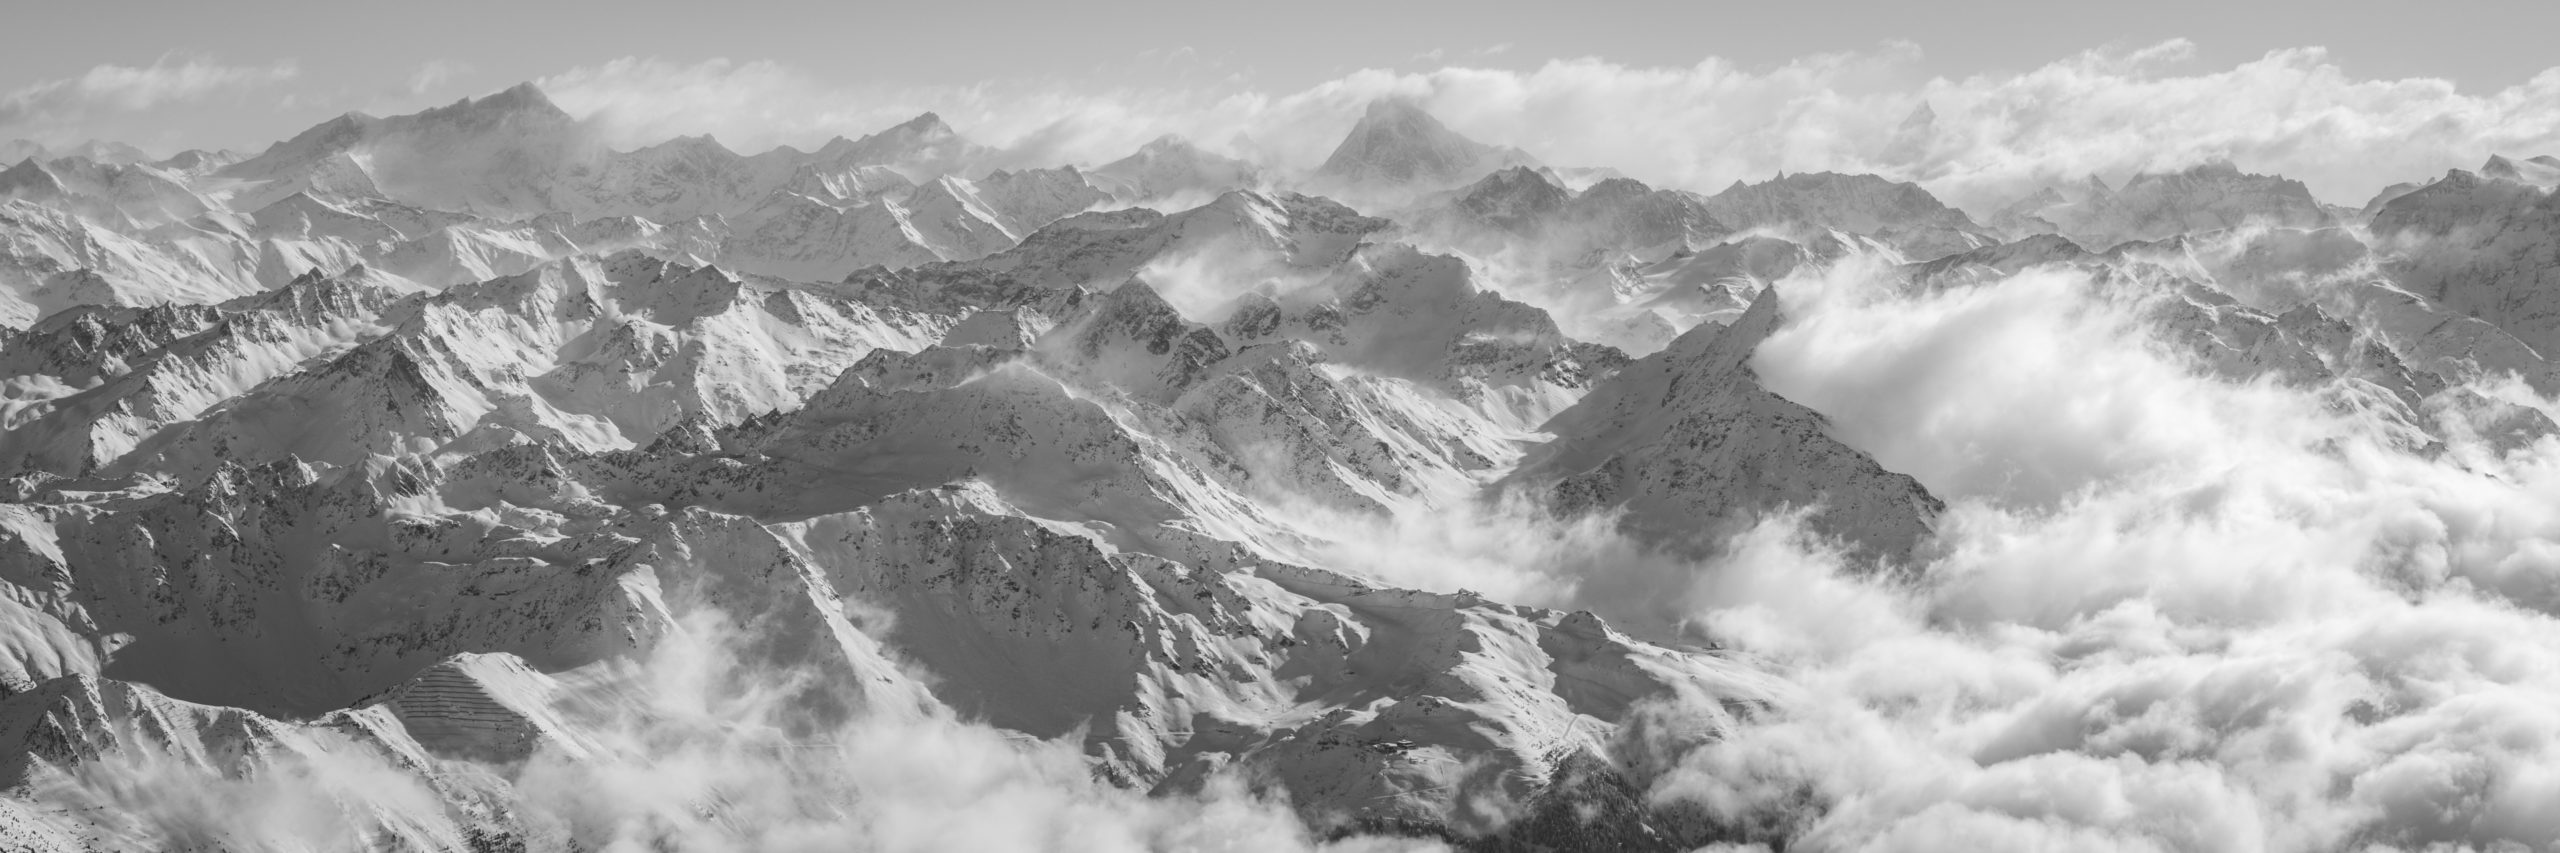 Verbier panorama picture - Verbier ski - panoramic mountain poster